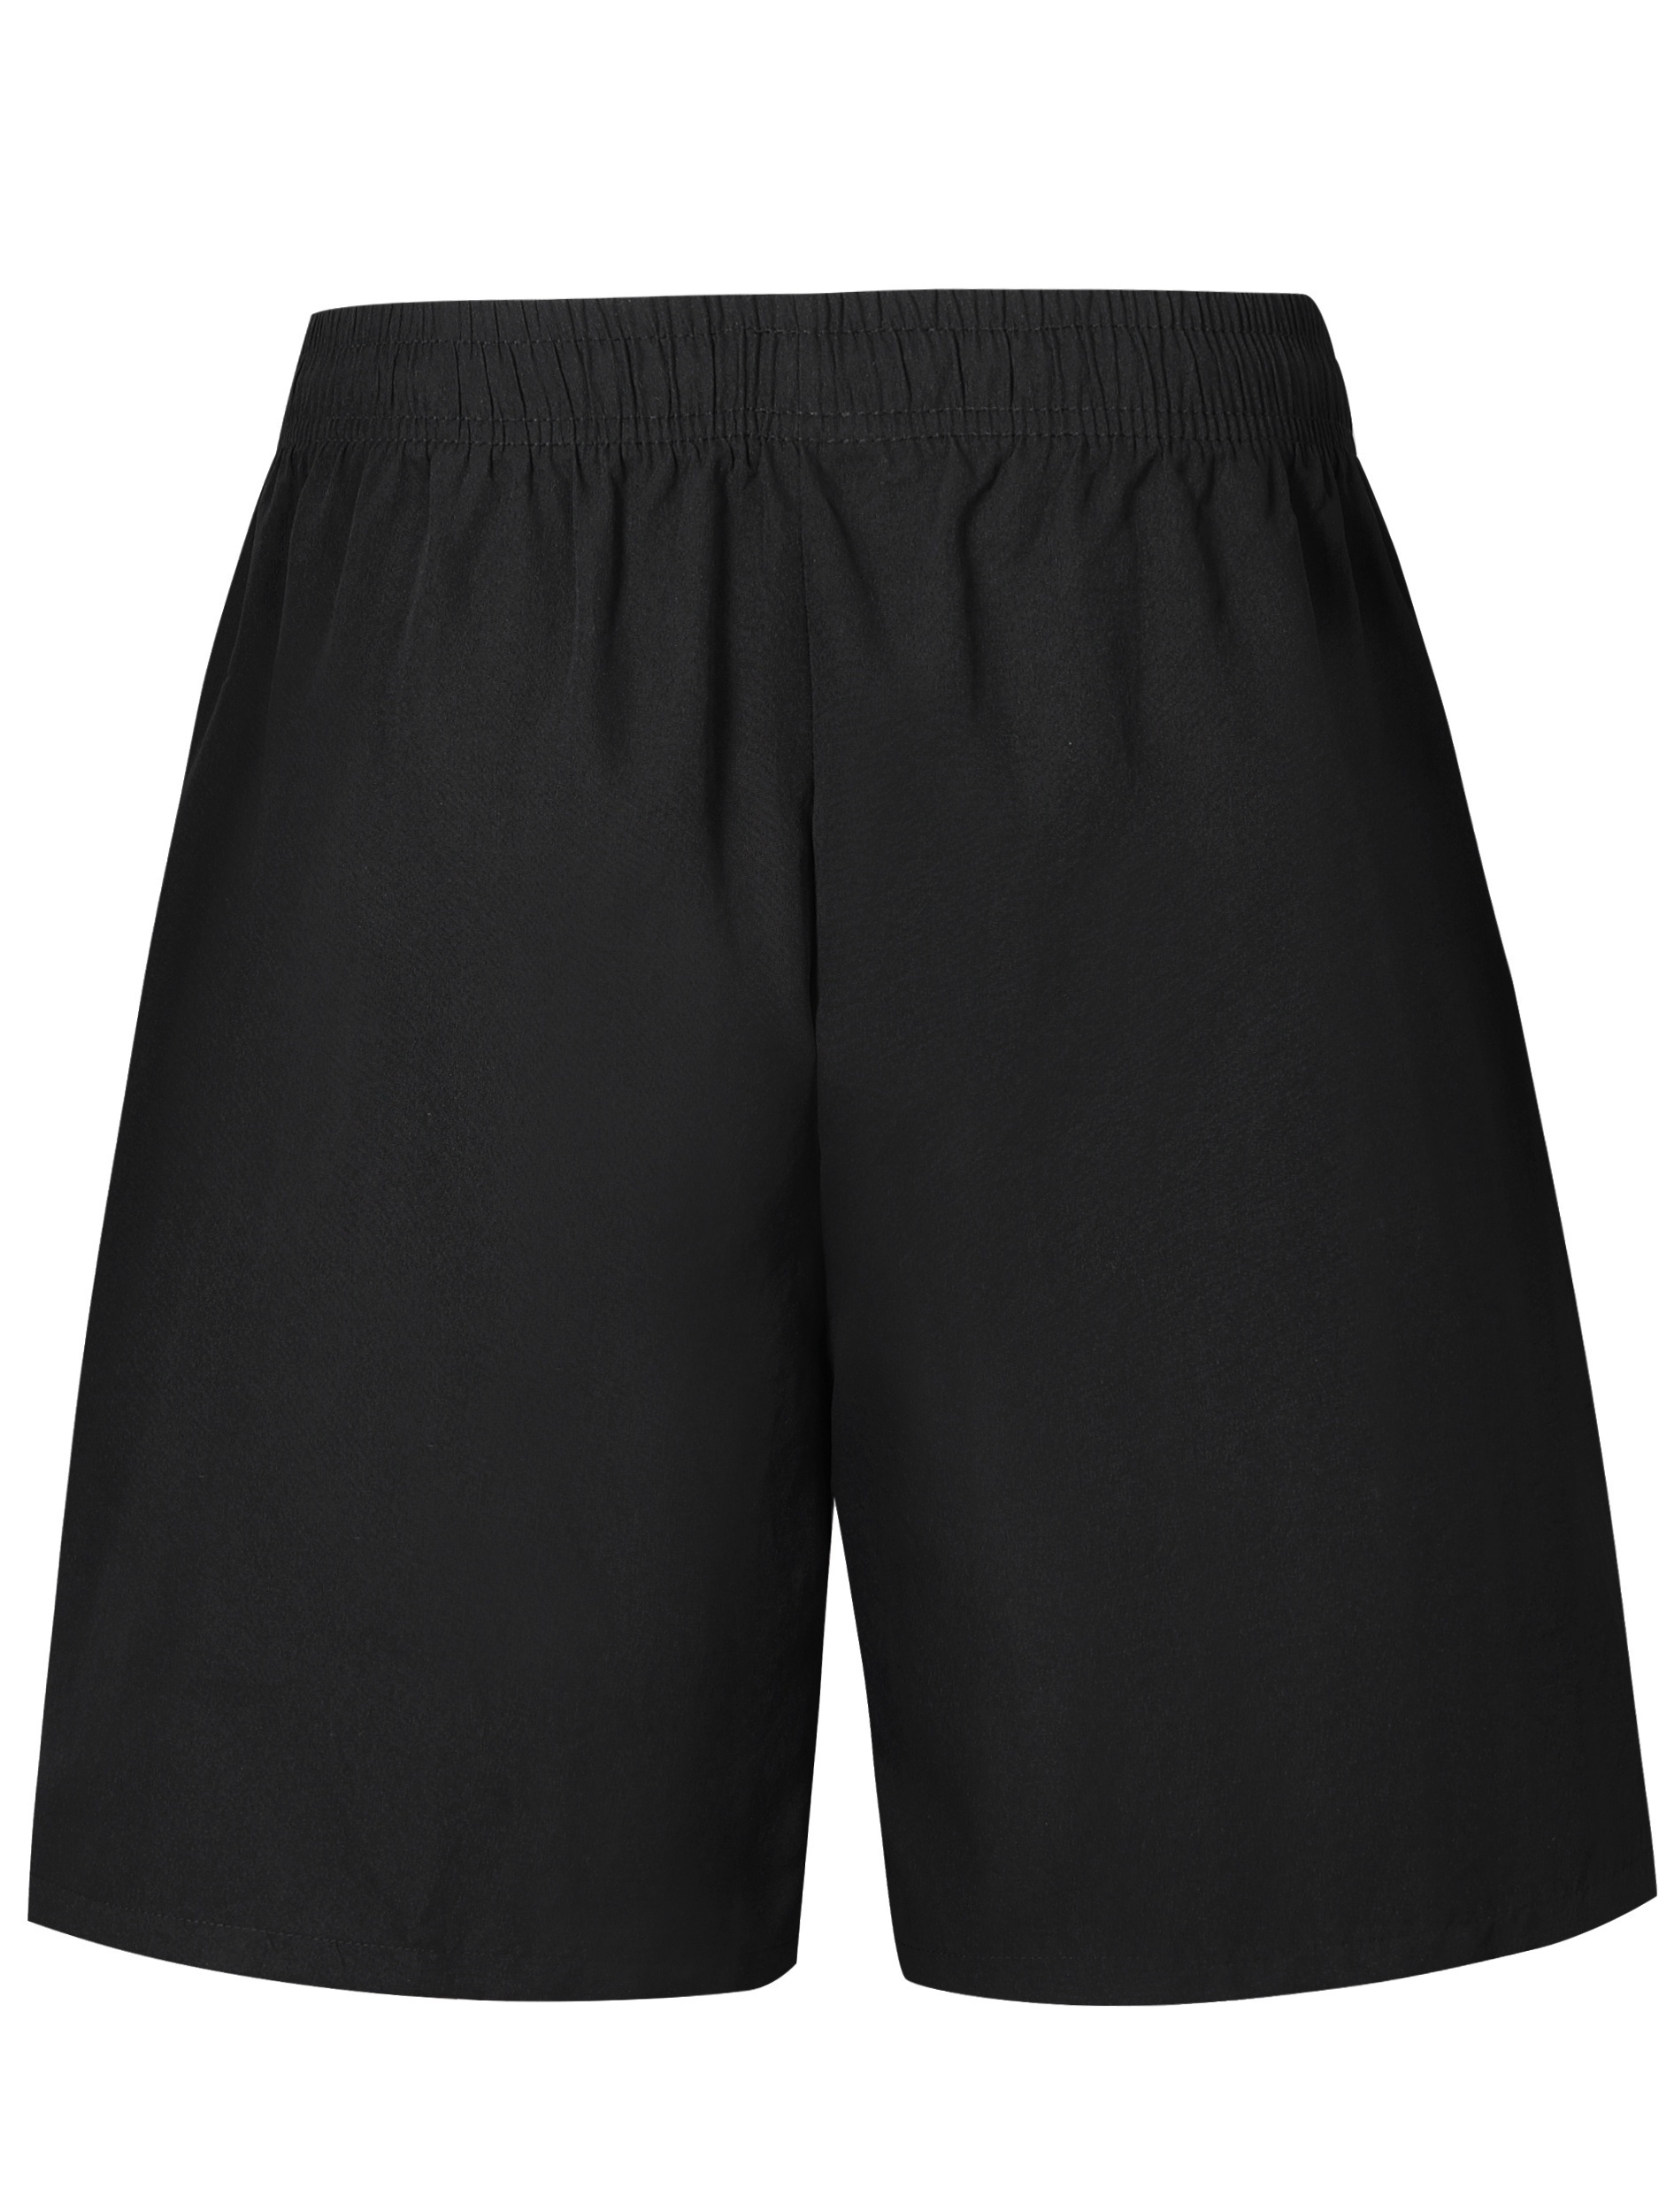 Pantalón deportivo para hombre,color gris oscuro - racketball movil